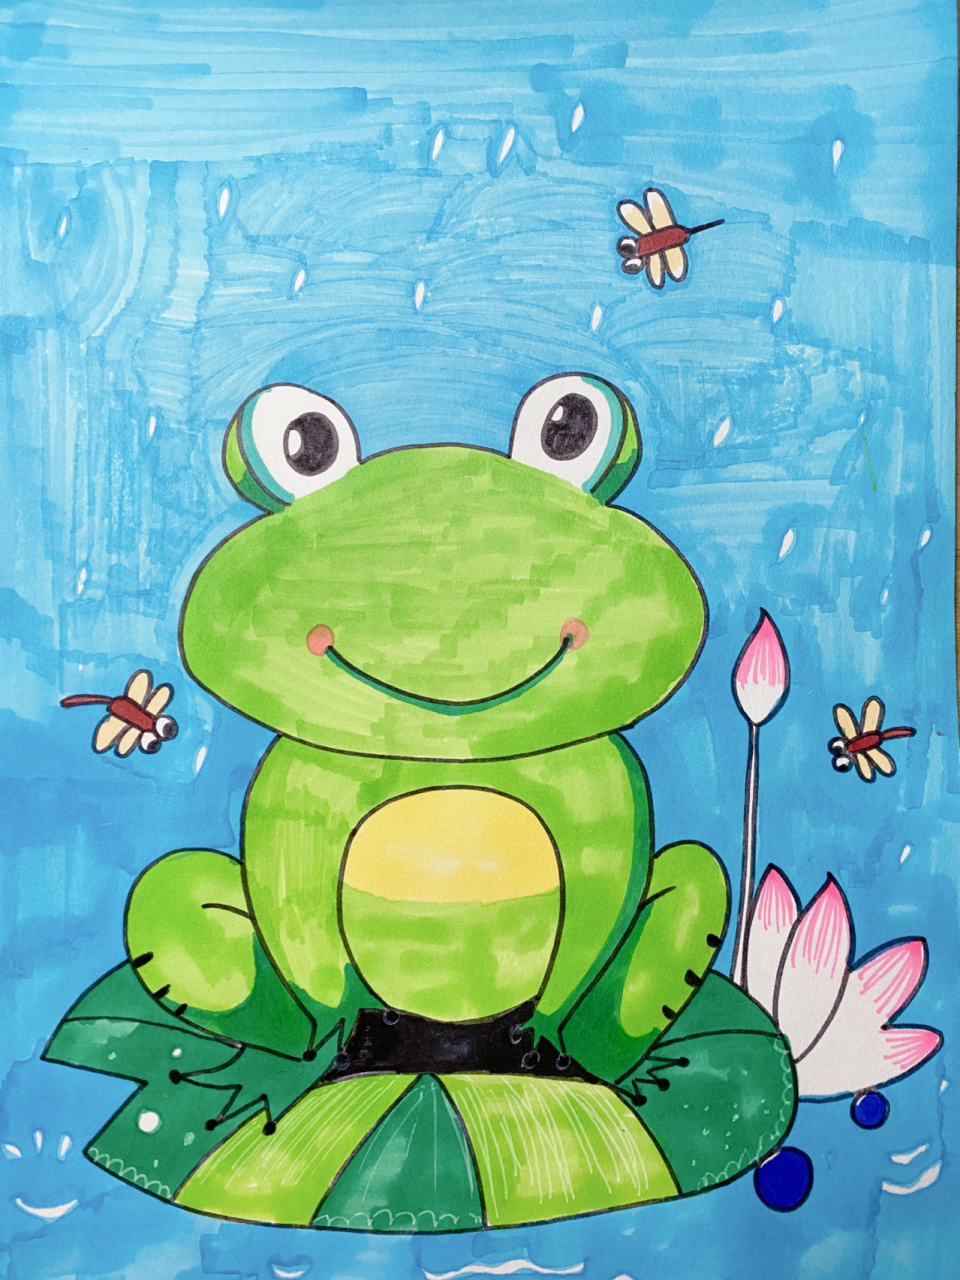 儿童画小青蛙90 重难点:欣赏小青蛙90图片,了解青蛙的知识,增强对